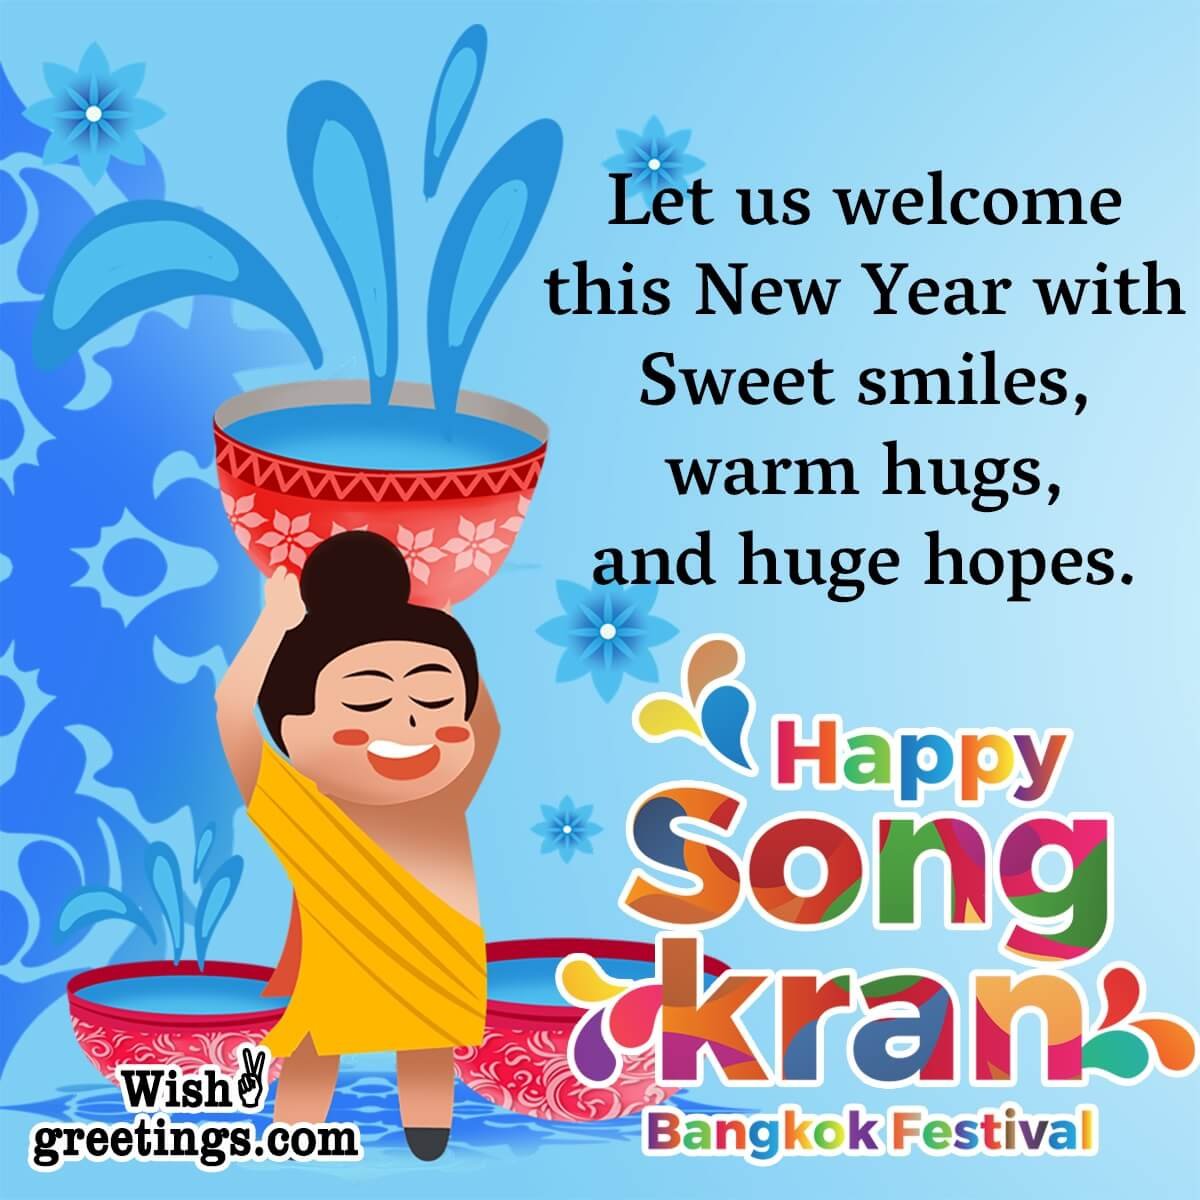 Happy Songkran Festival Message